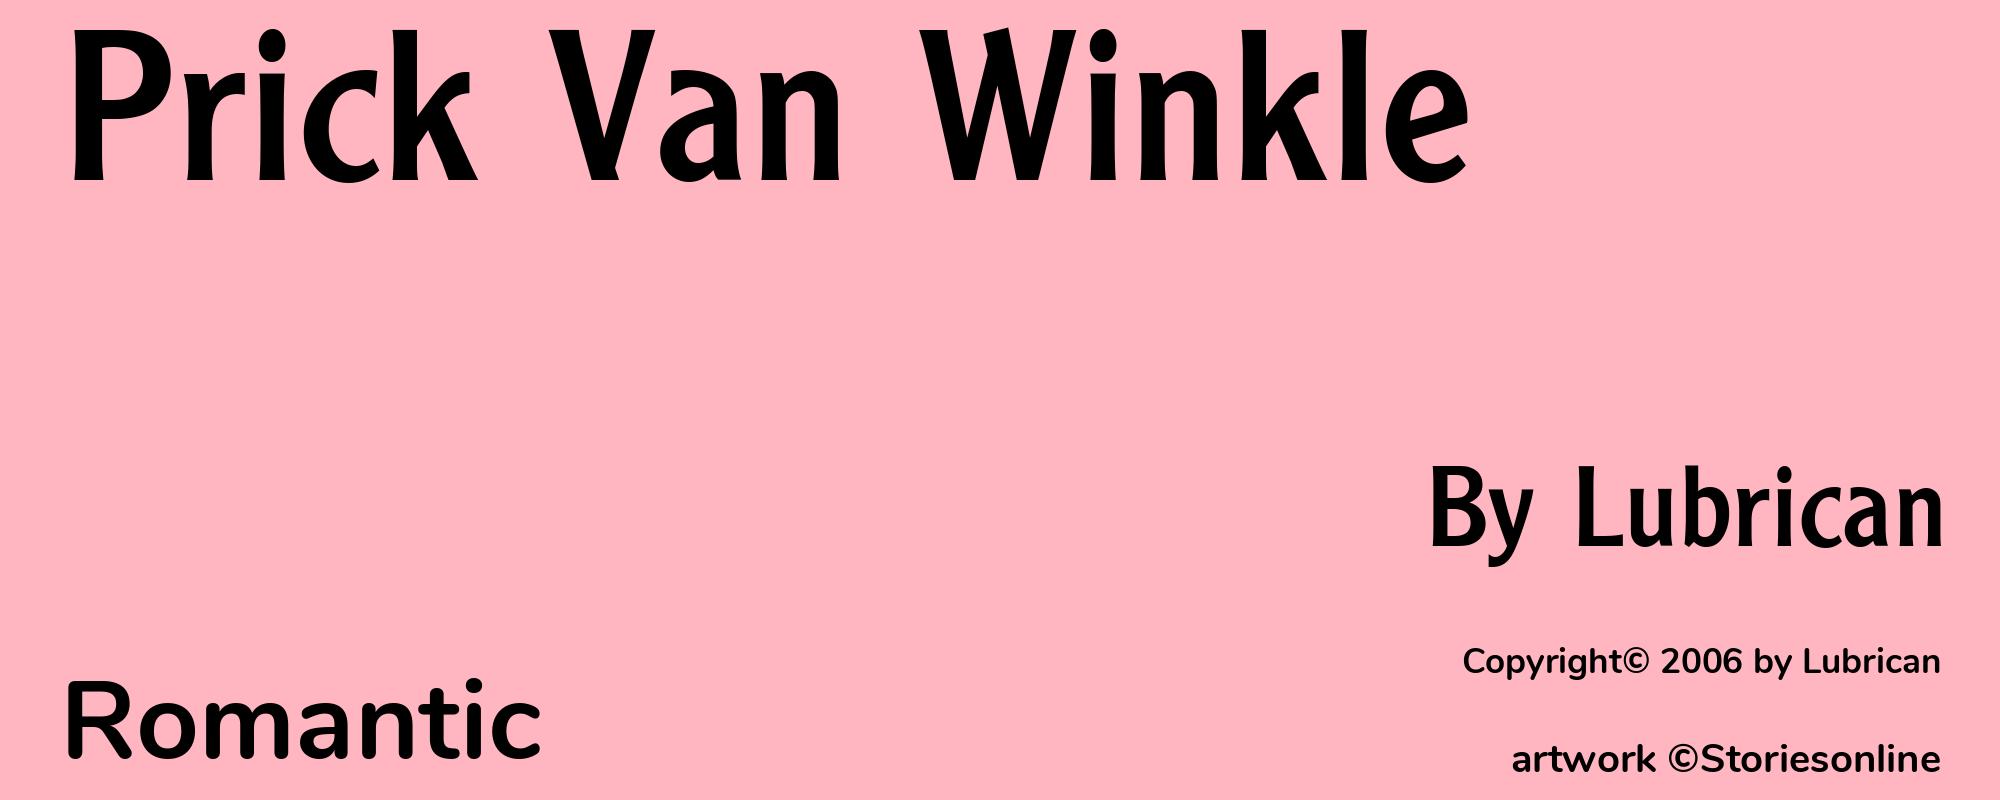 Prick Van Winkle - Cover